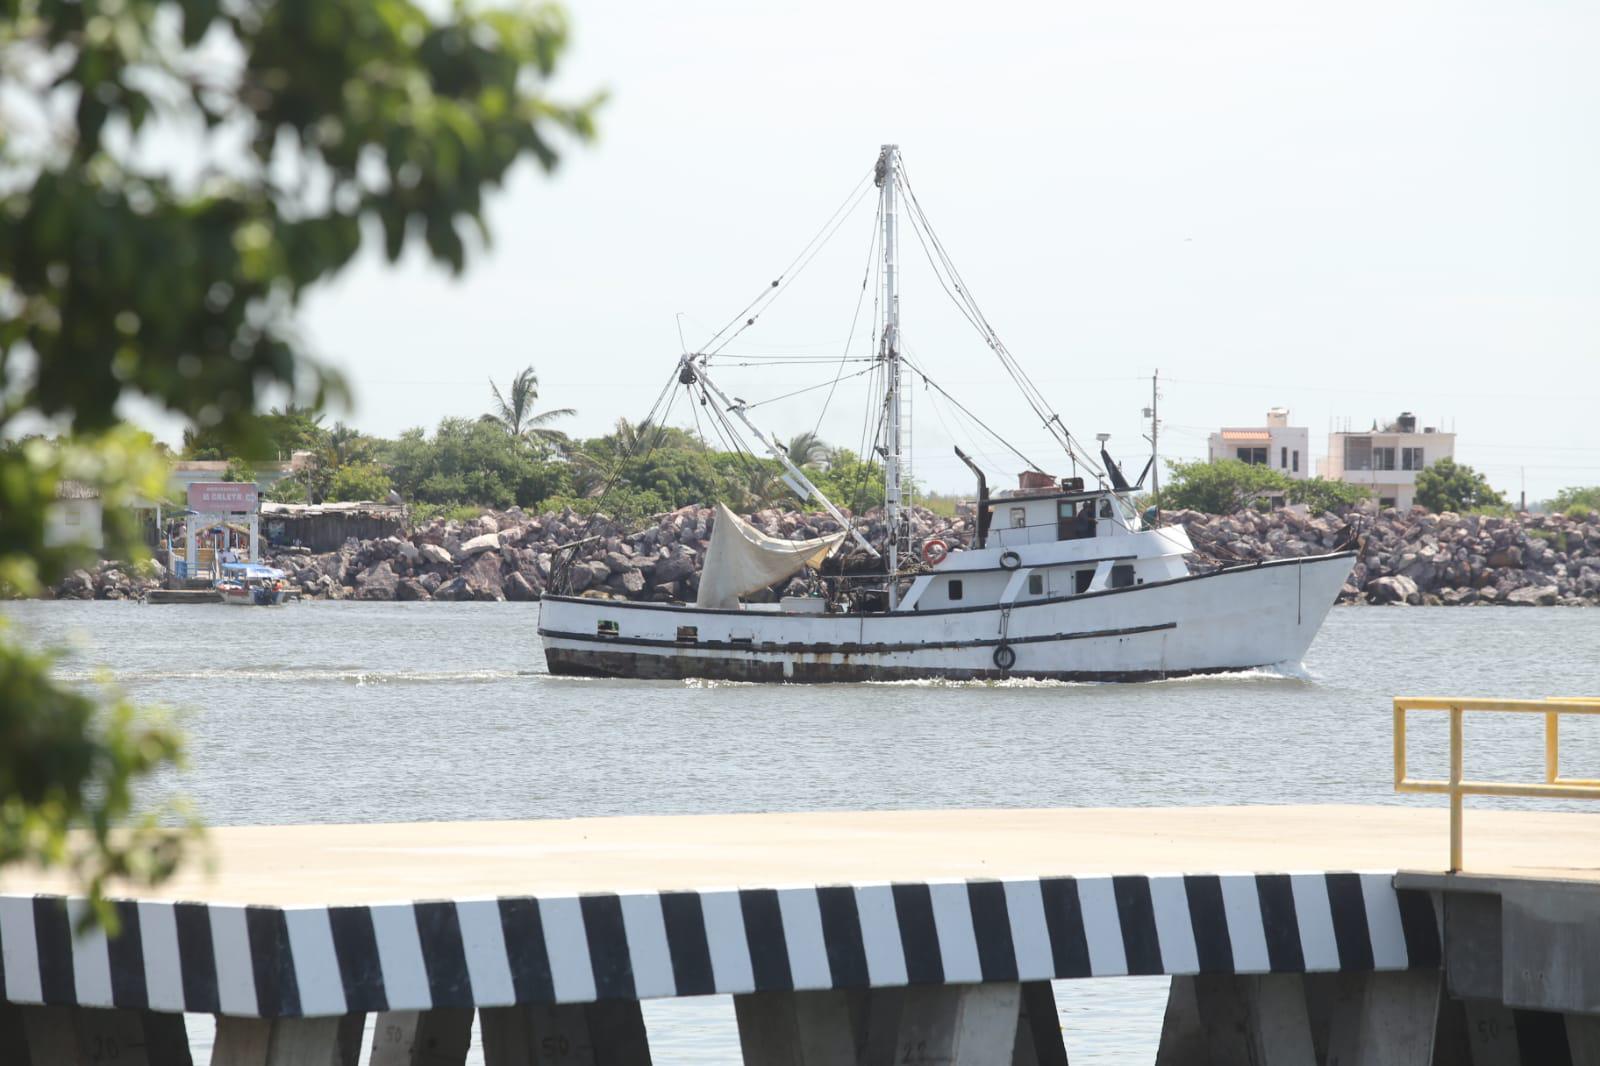 $!Salen barcos camaroneros de Mazatlán a altamar; familiares les desean buenas capturas